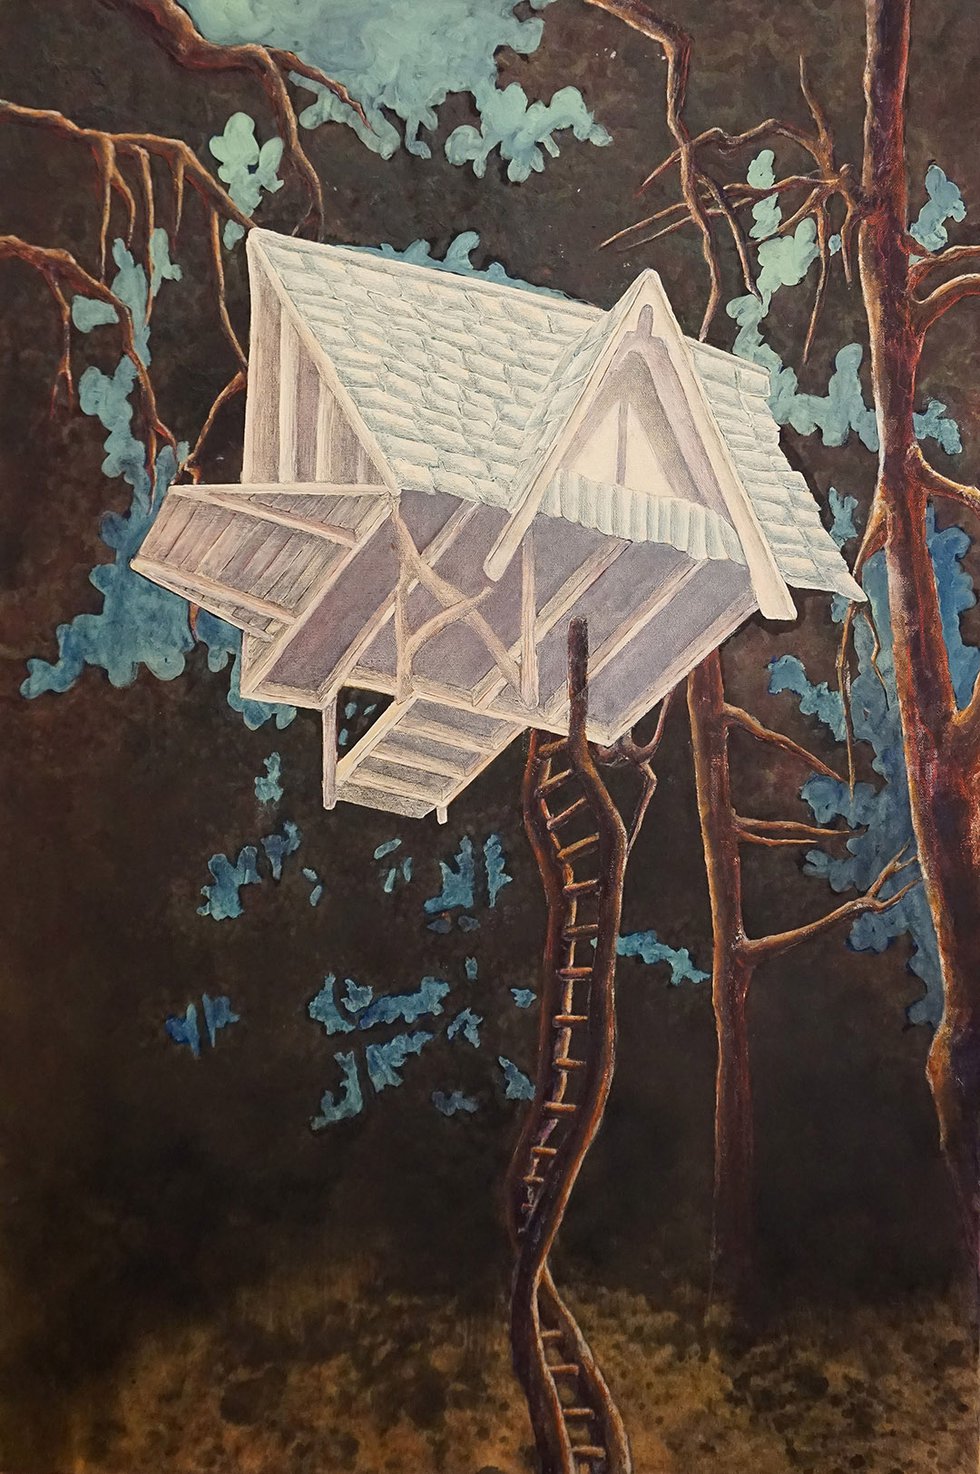 Noemi de Bruijn, "White Treehouse," 2019